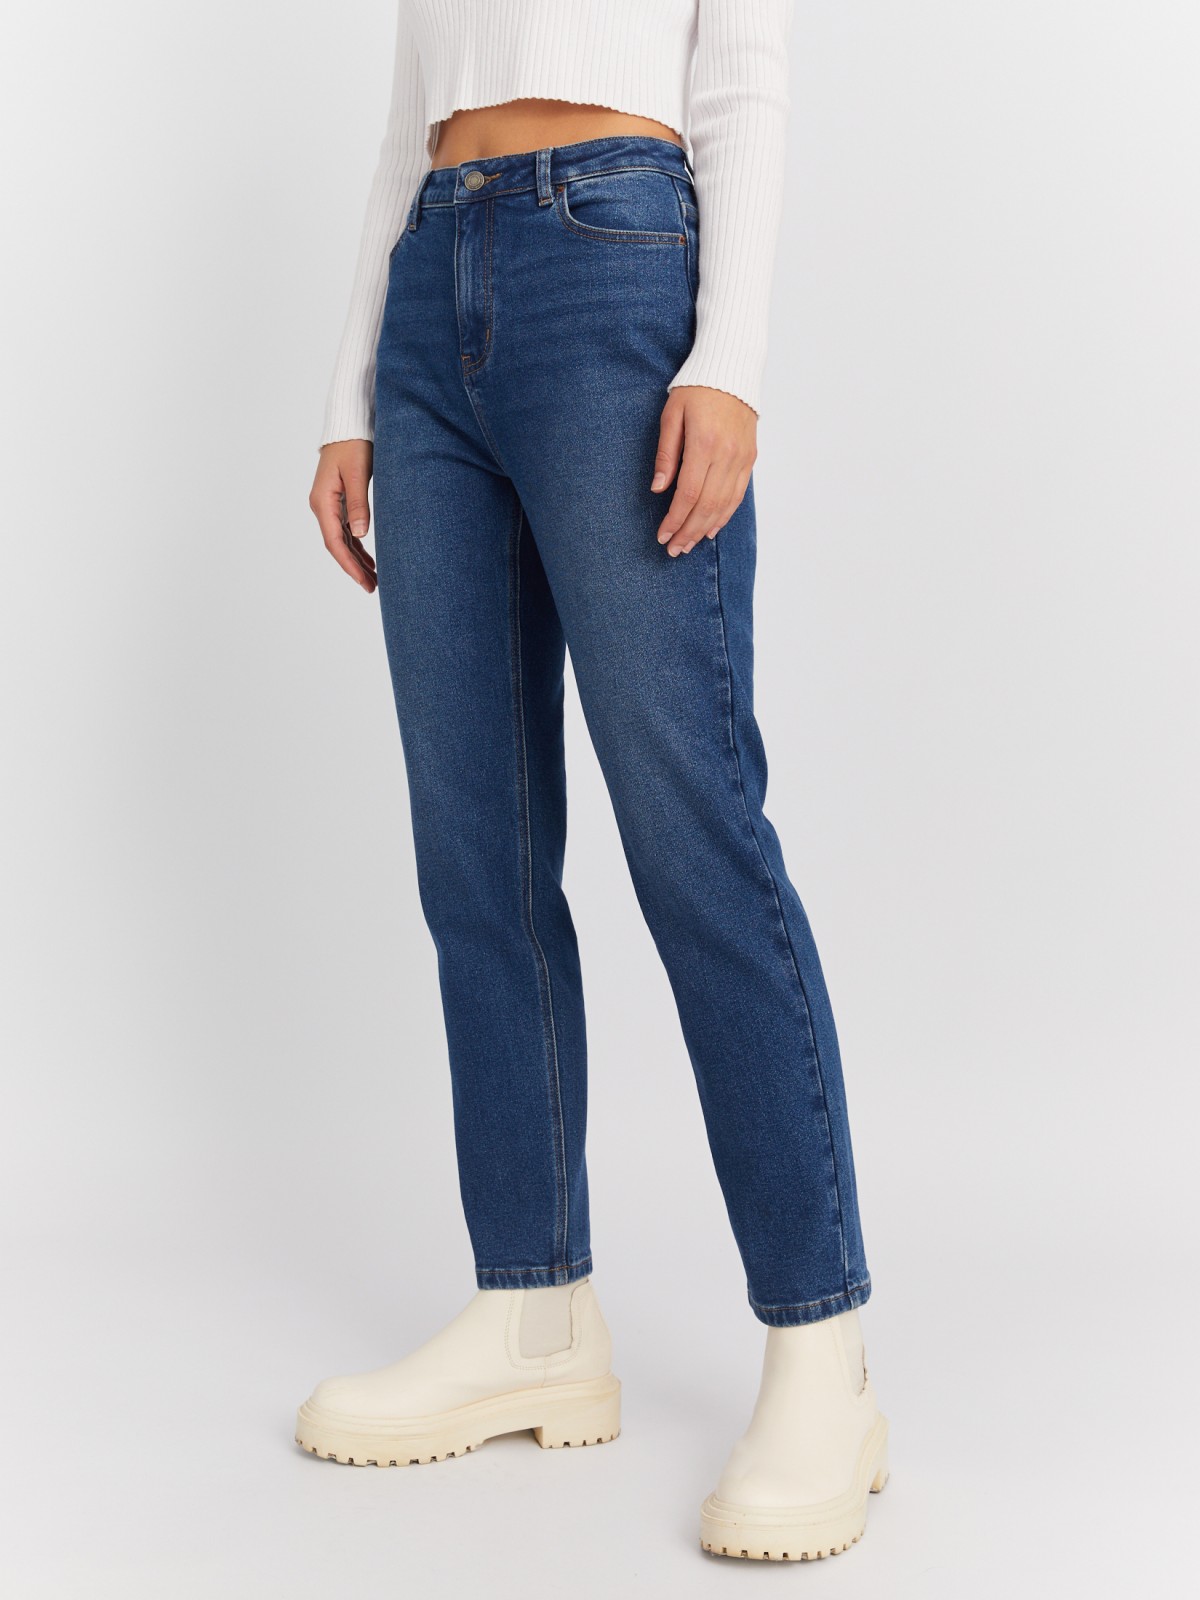 Утеплённые джинсы силуэта Mom Comfort с высокой посадкой